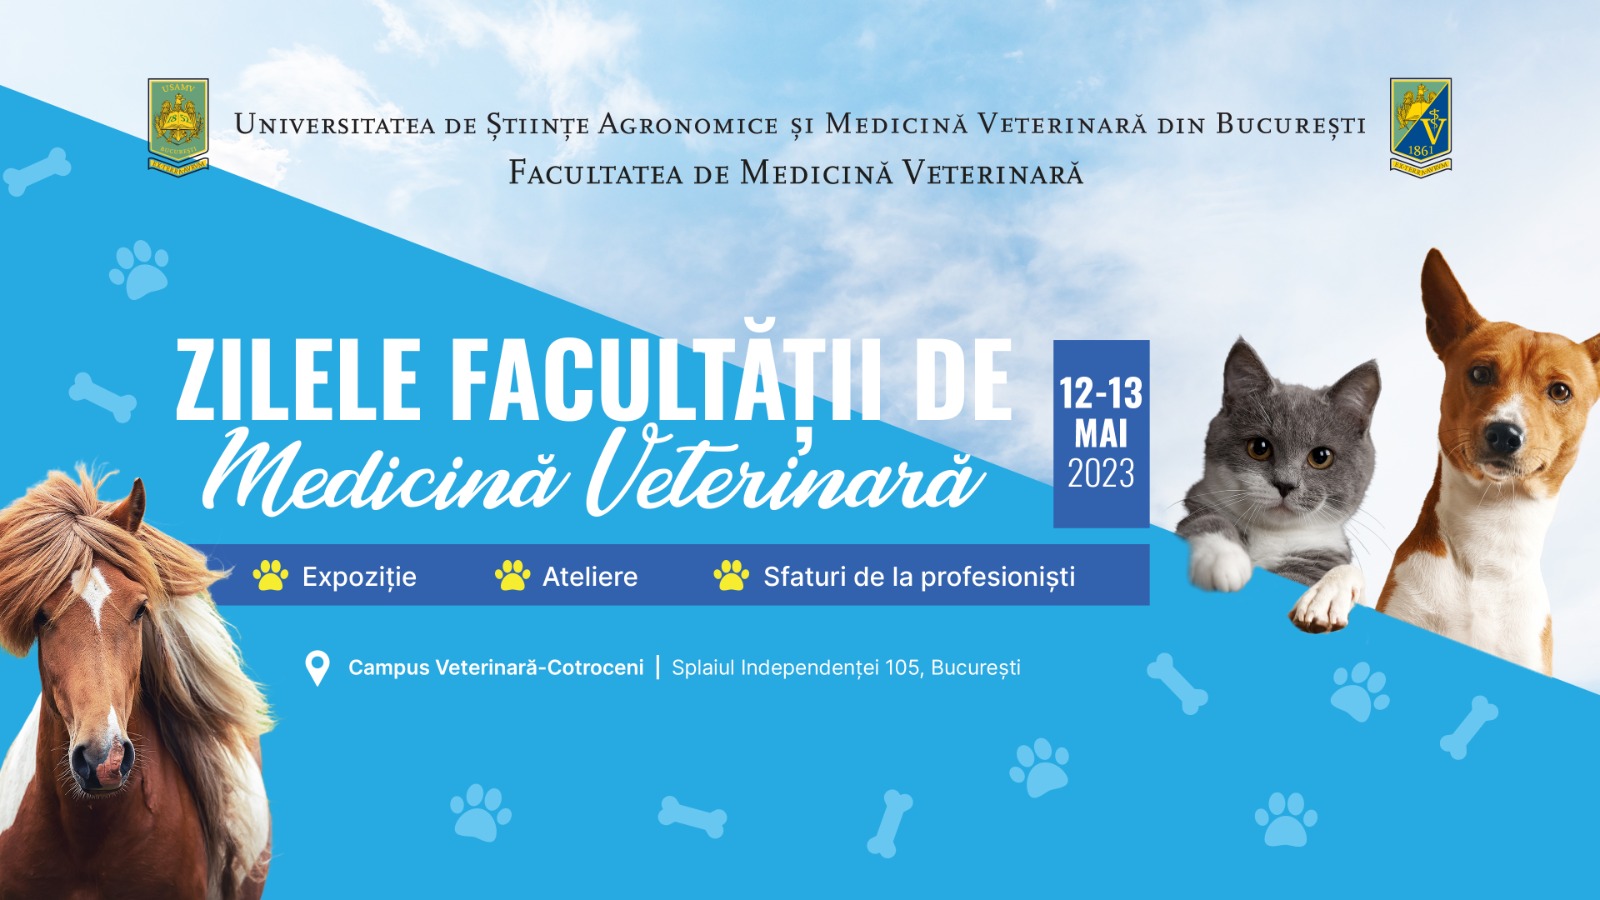 Demonstrații de dresaj canin și ecvestru, la Zilele Facultății de Medicină Veterinară 